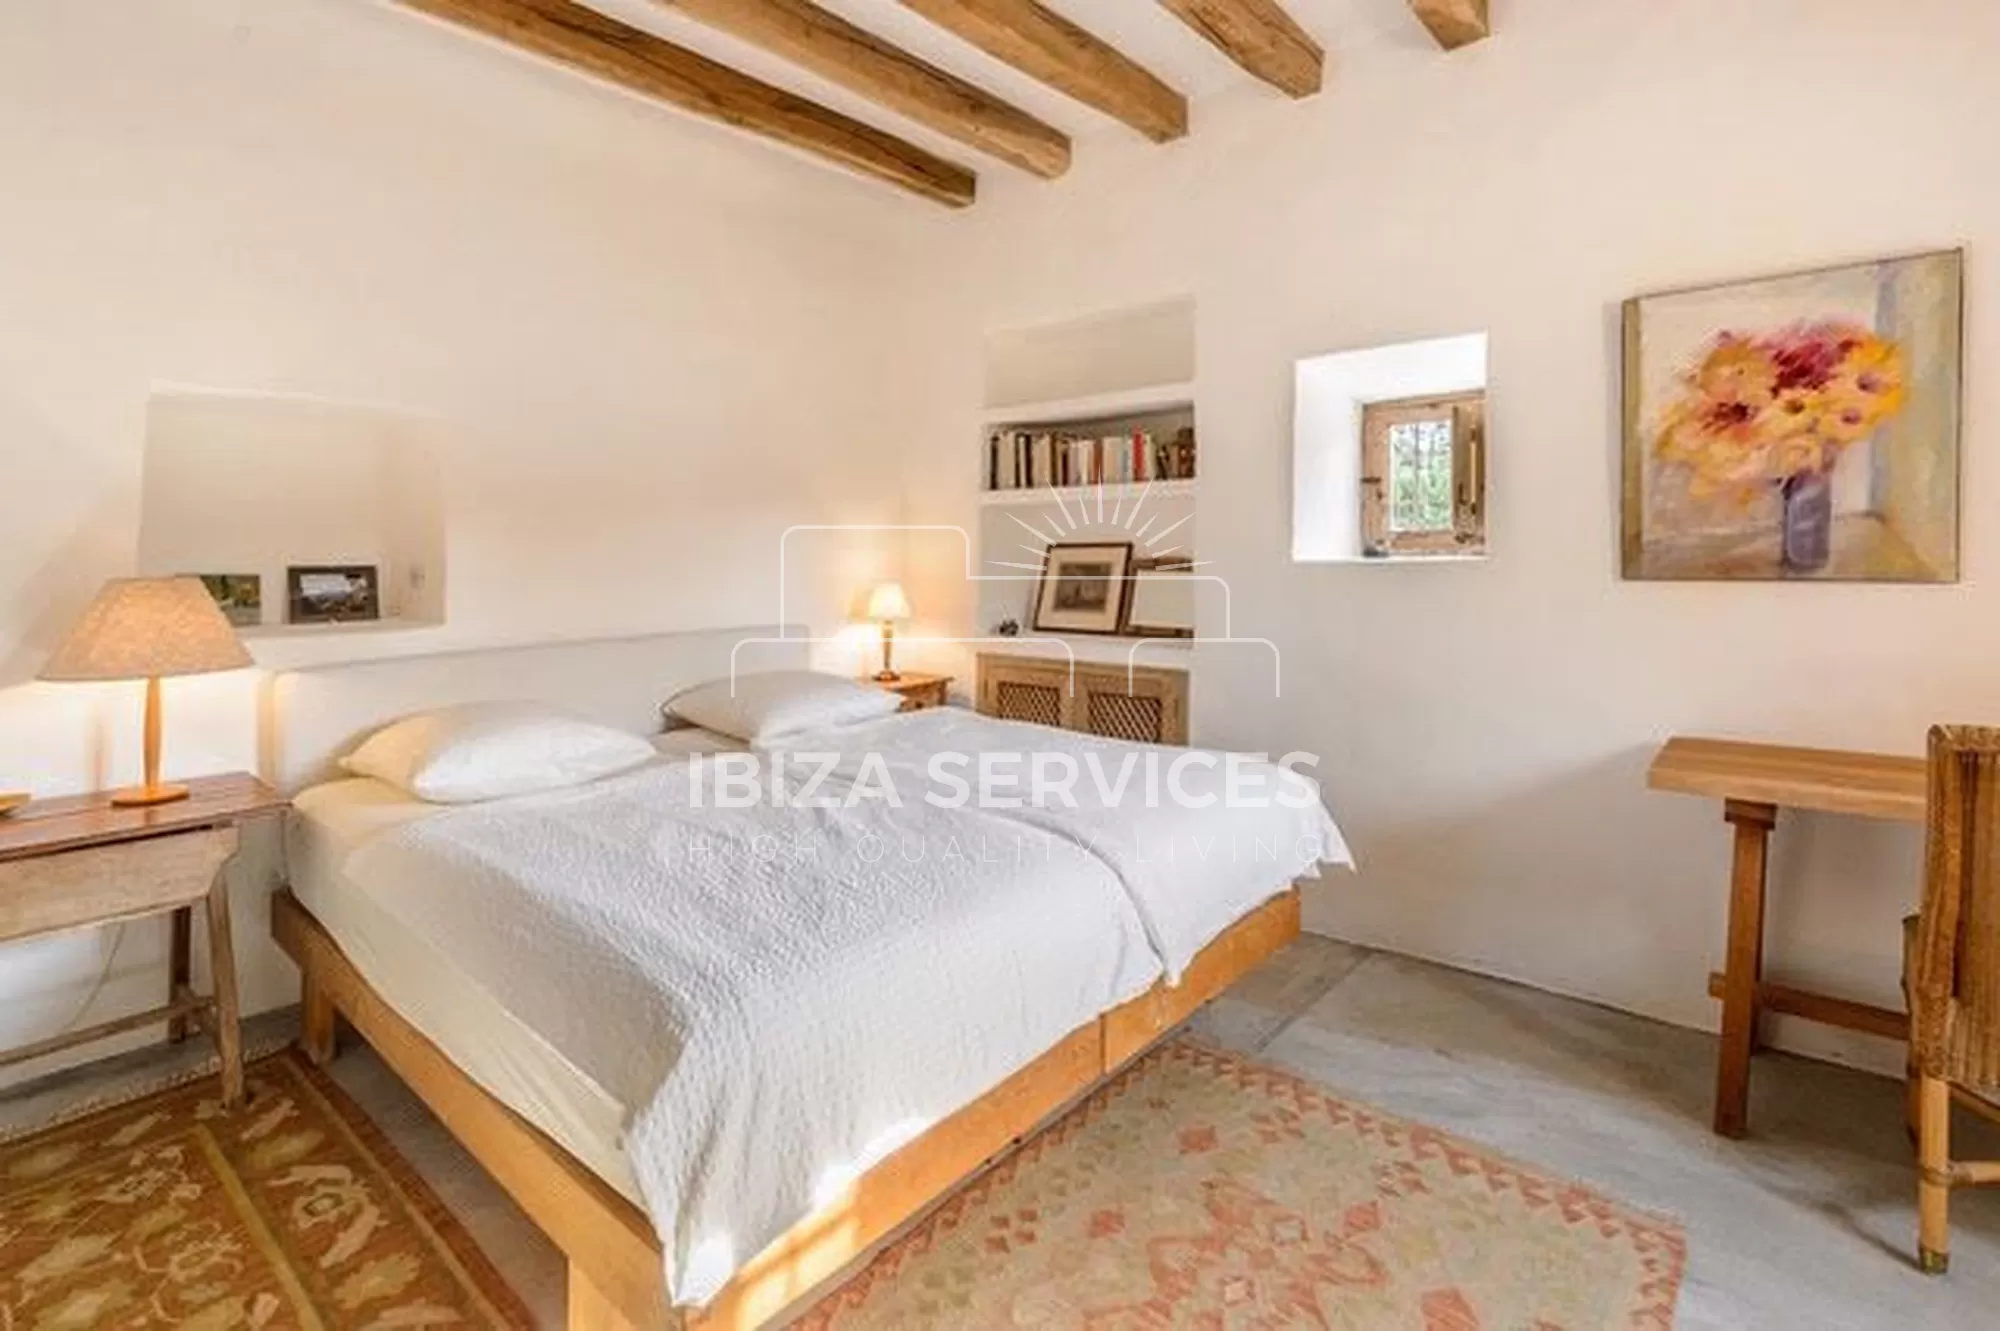 Betoverende finca met 2 slaapkamers beschikbaar voor vakantieverhuur in San Rafael.